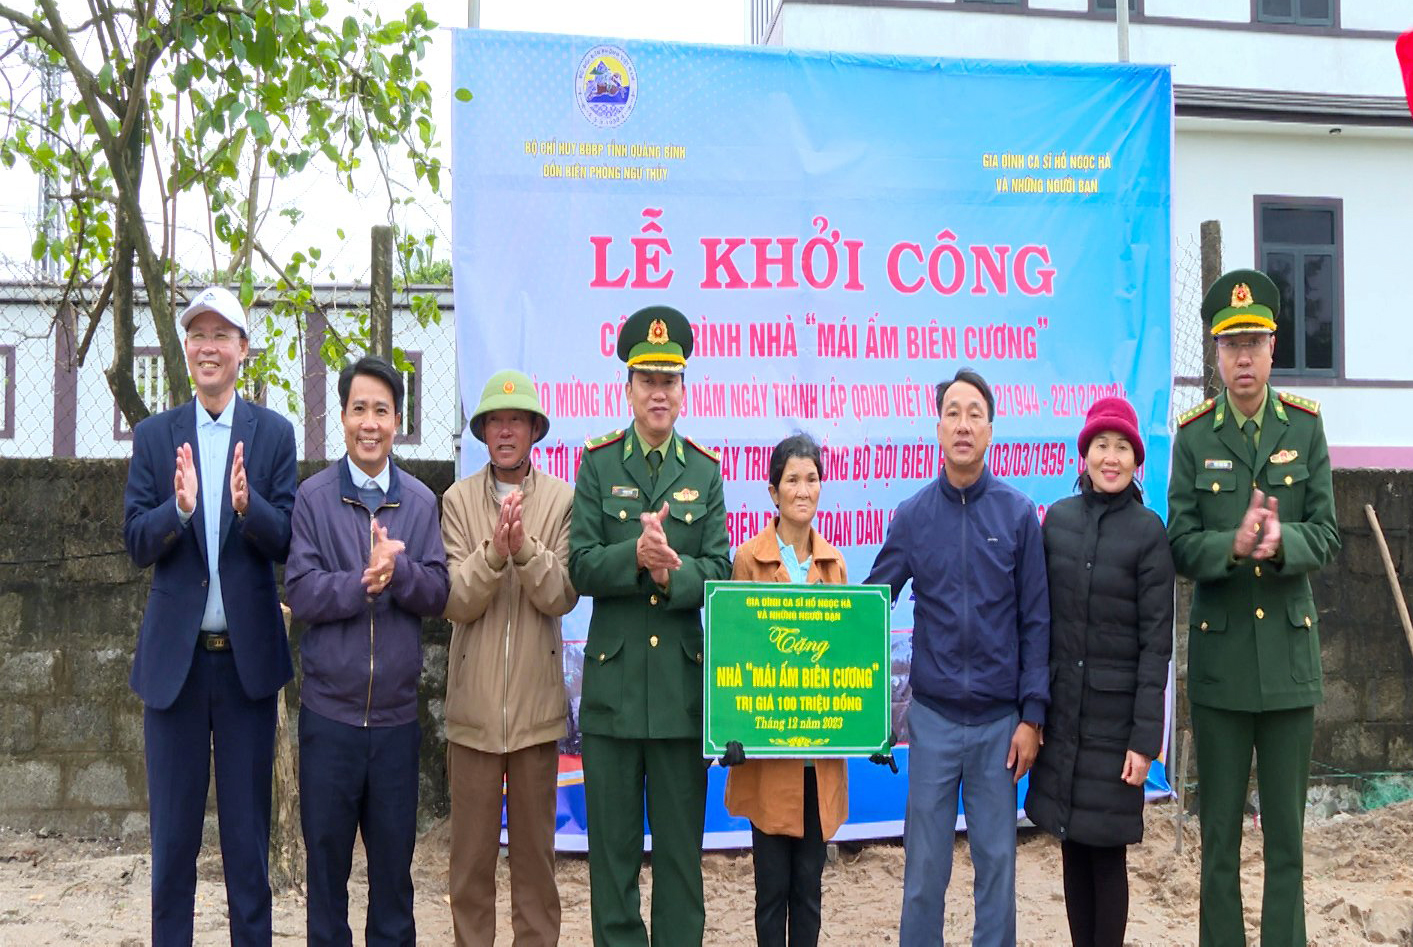 Đồn Biên phòng Ngư Thủy và các đơn vị liên quan trao kinh phí hỗ trợ xây dựng “Mái ấm biên cương” cho bà Nguyễn Thị Dửng.